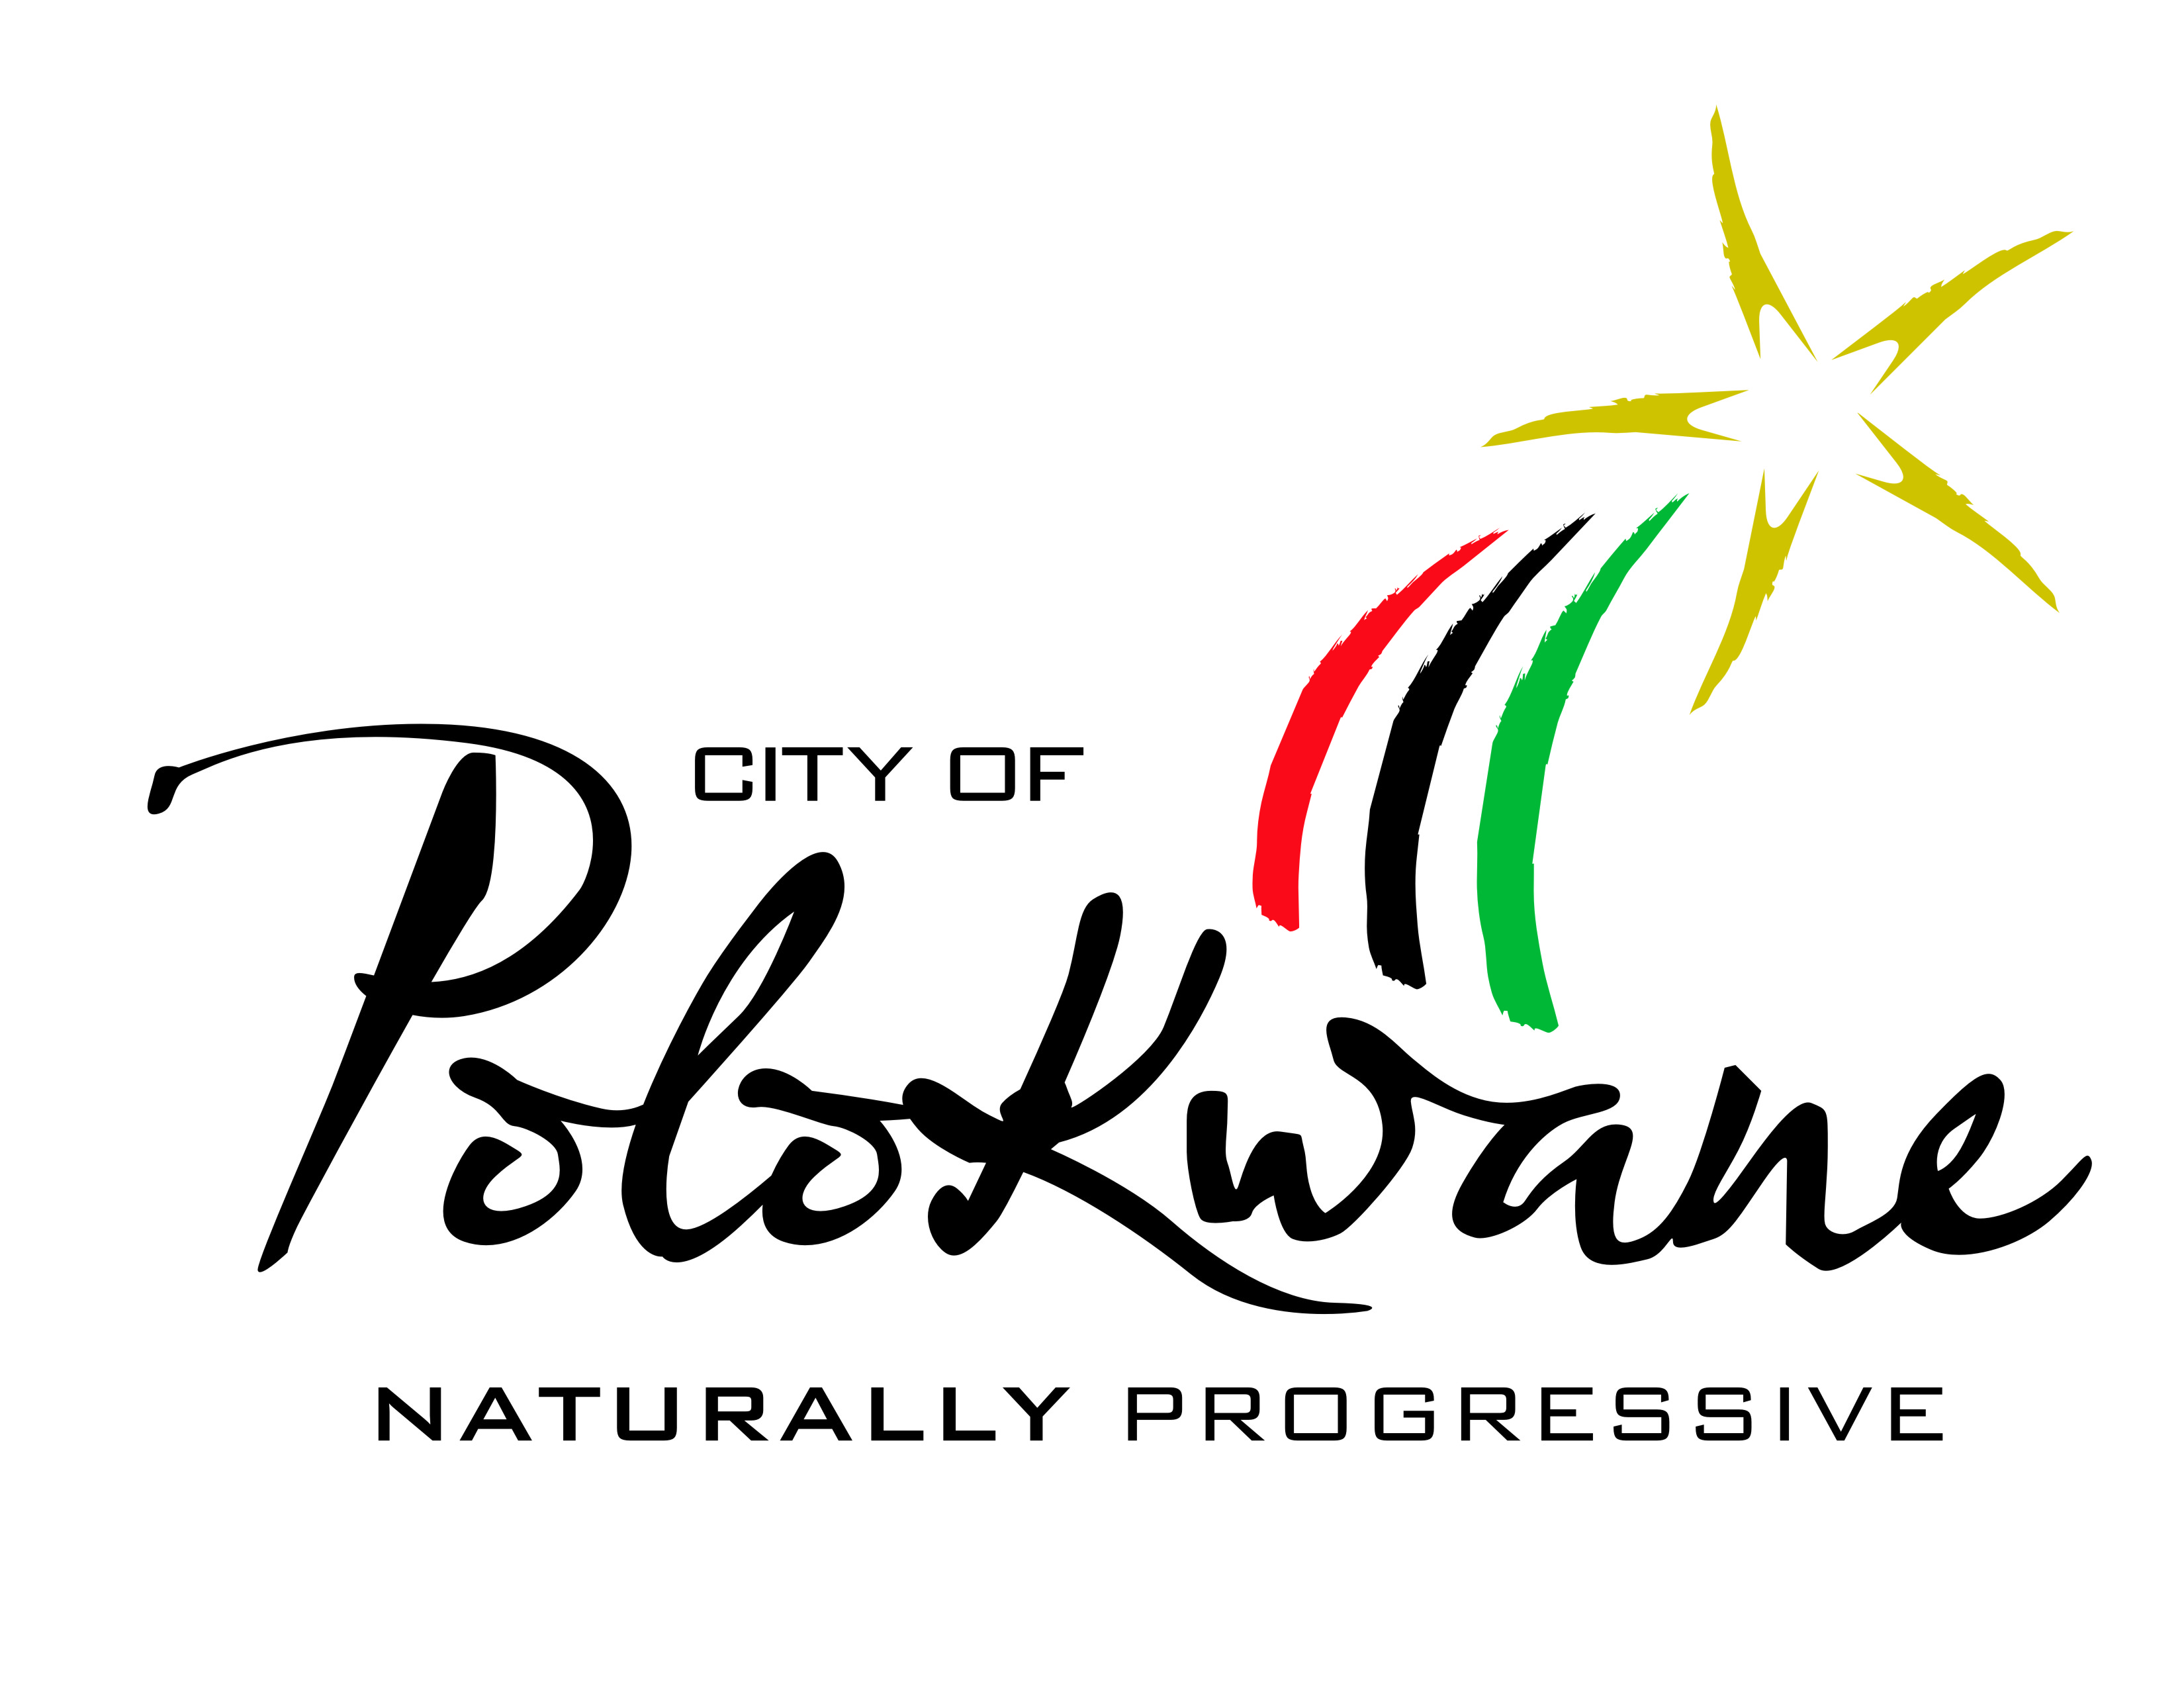 Polokwane Municipality